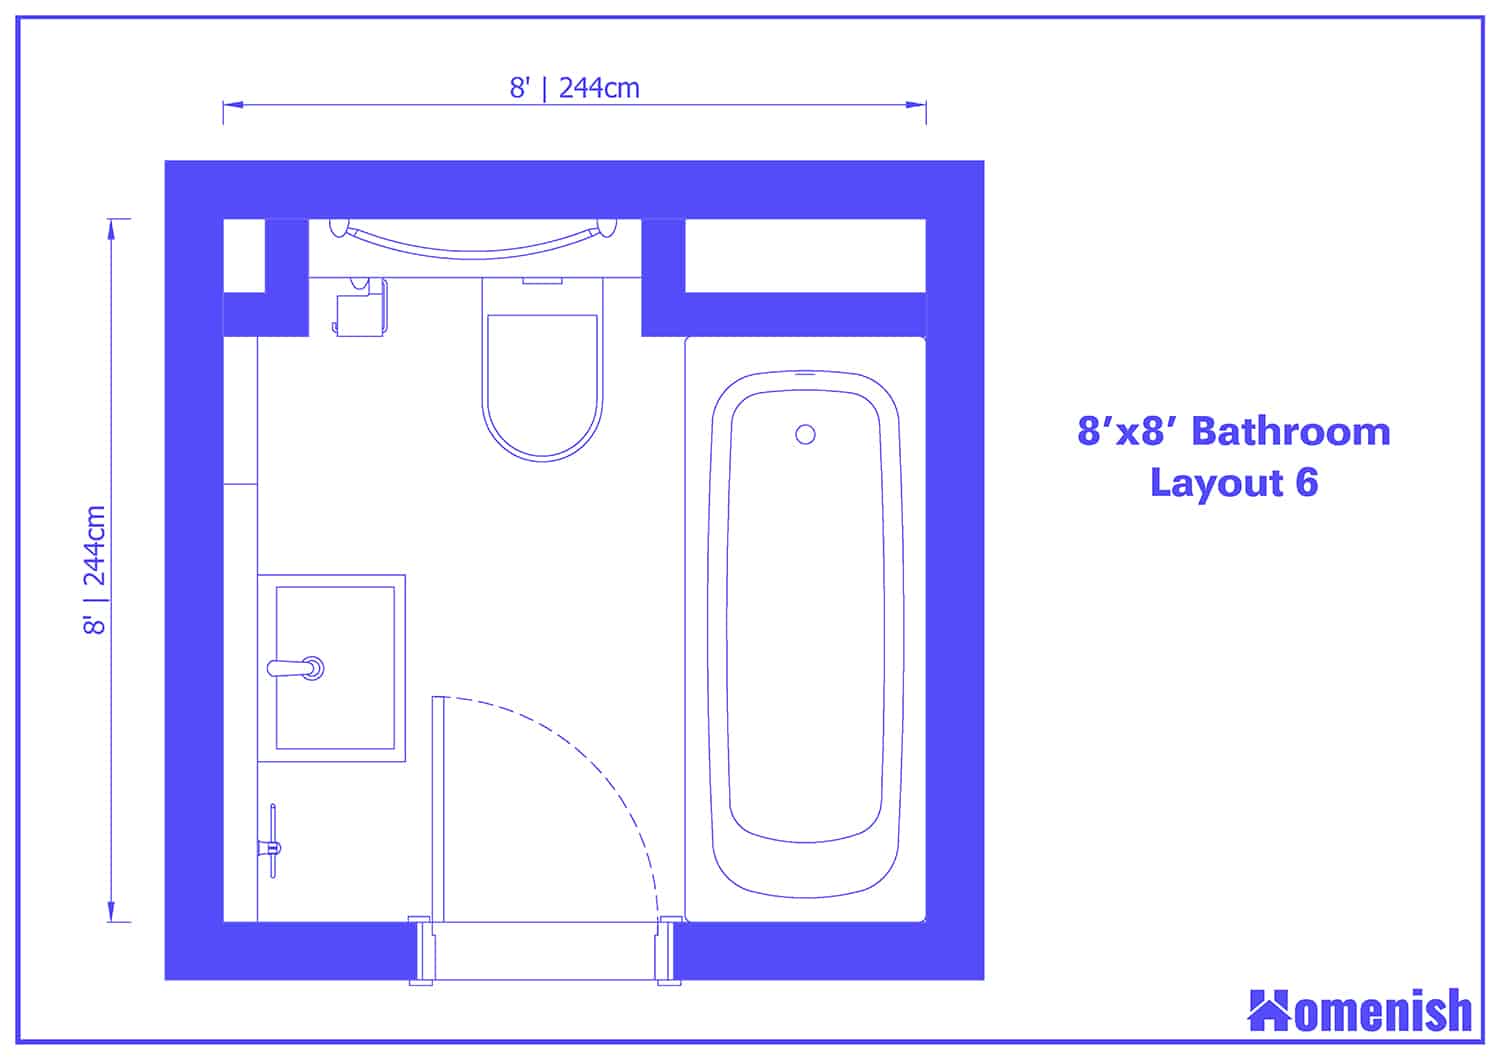 8' x 8' Bathroom Layout 6